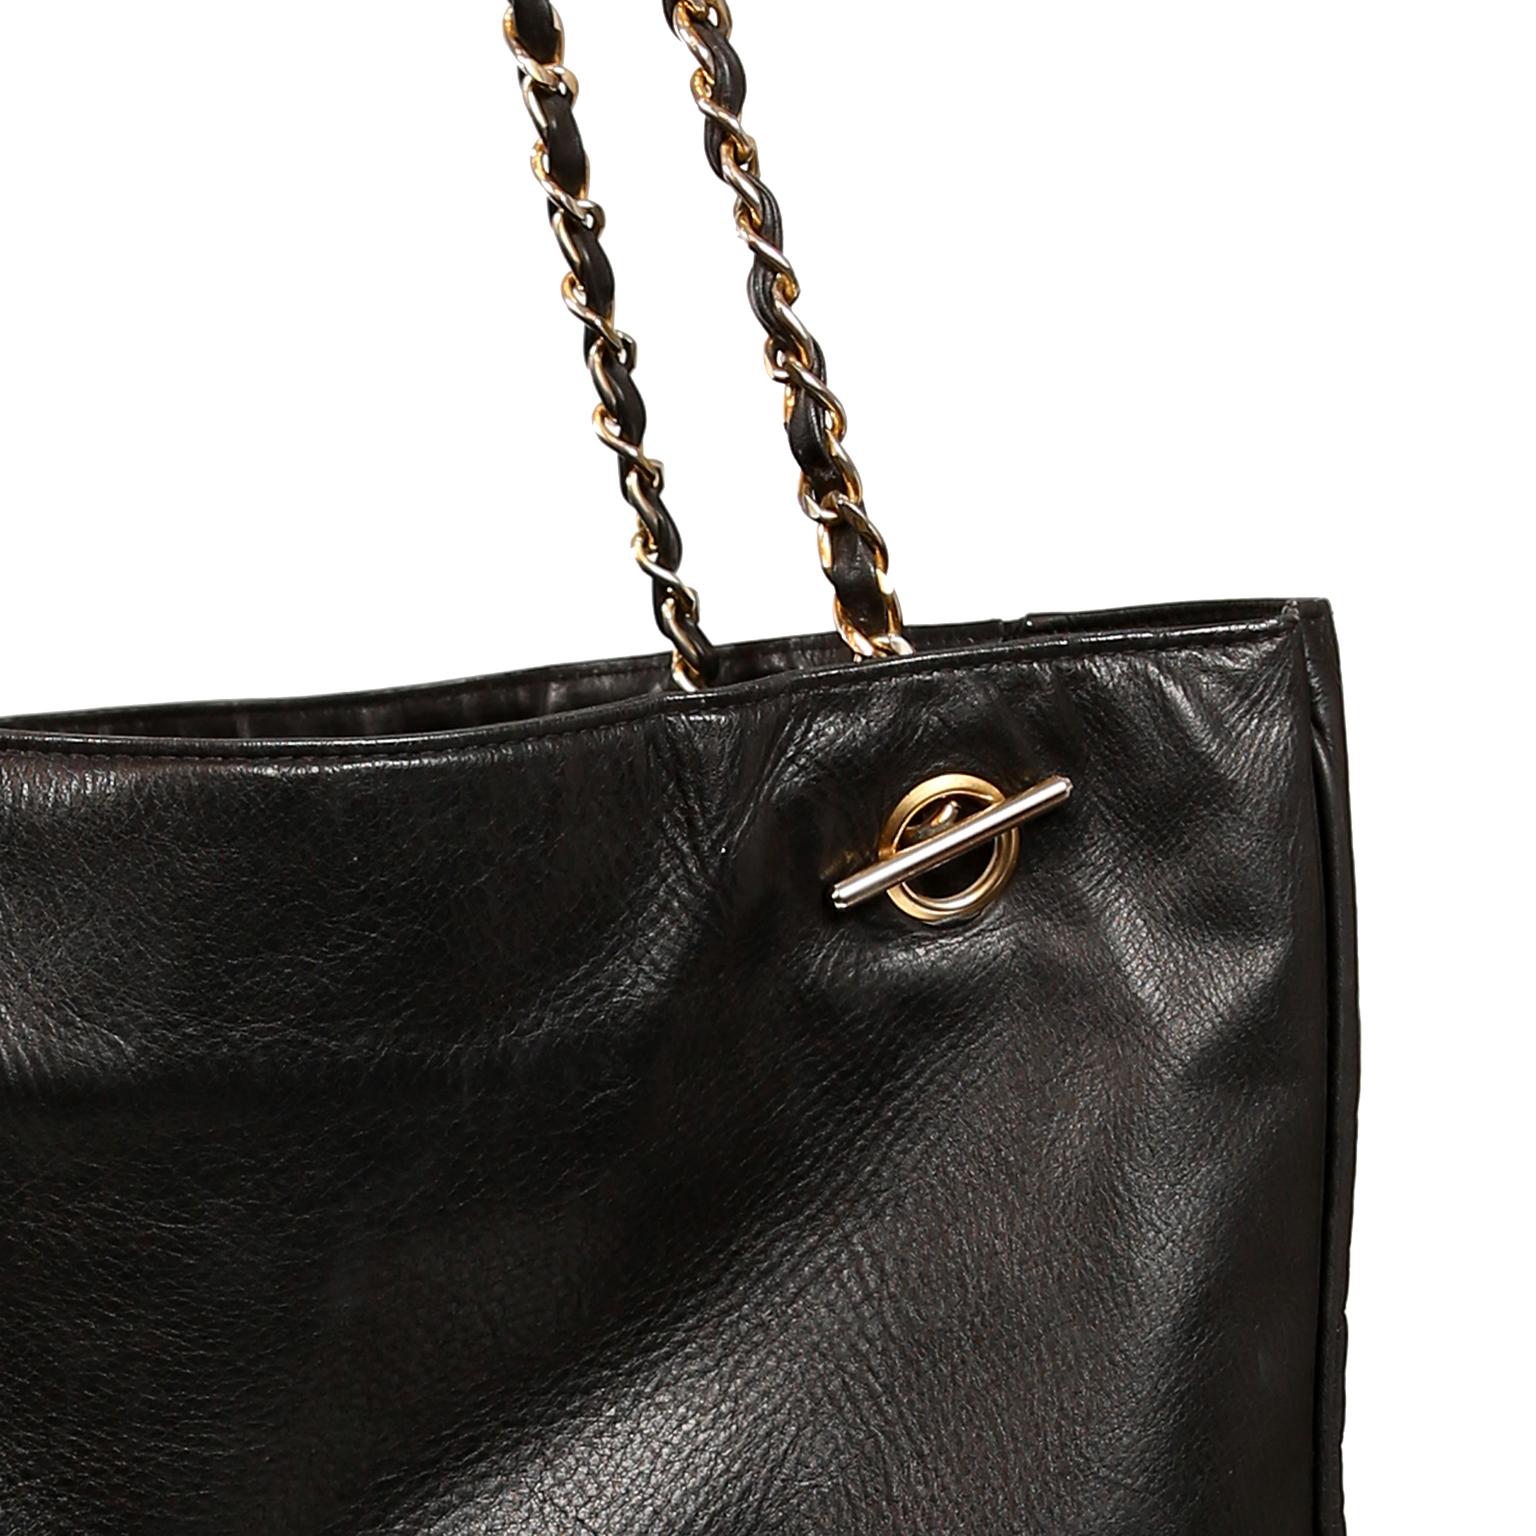 Chanel Black Leather Large Vintage Tote bag 4